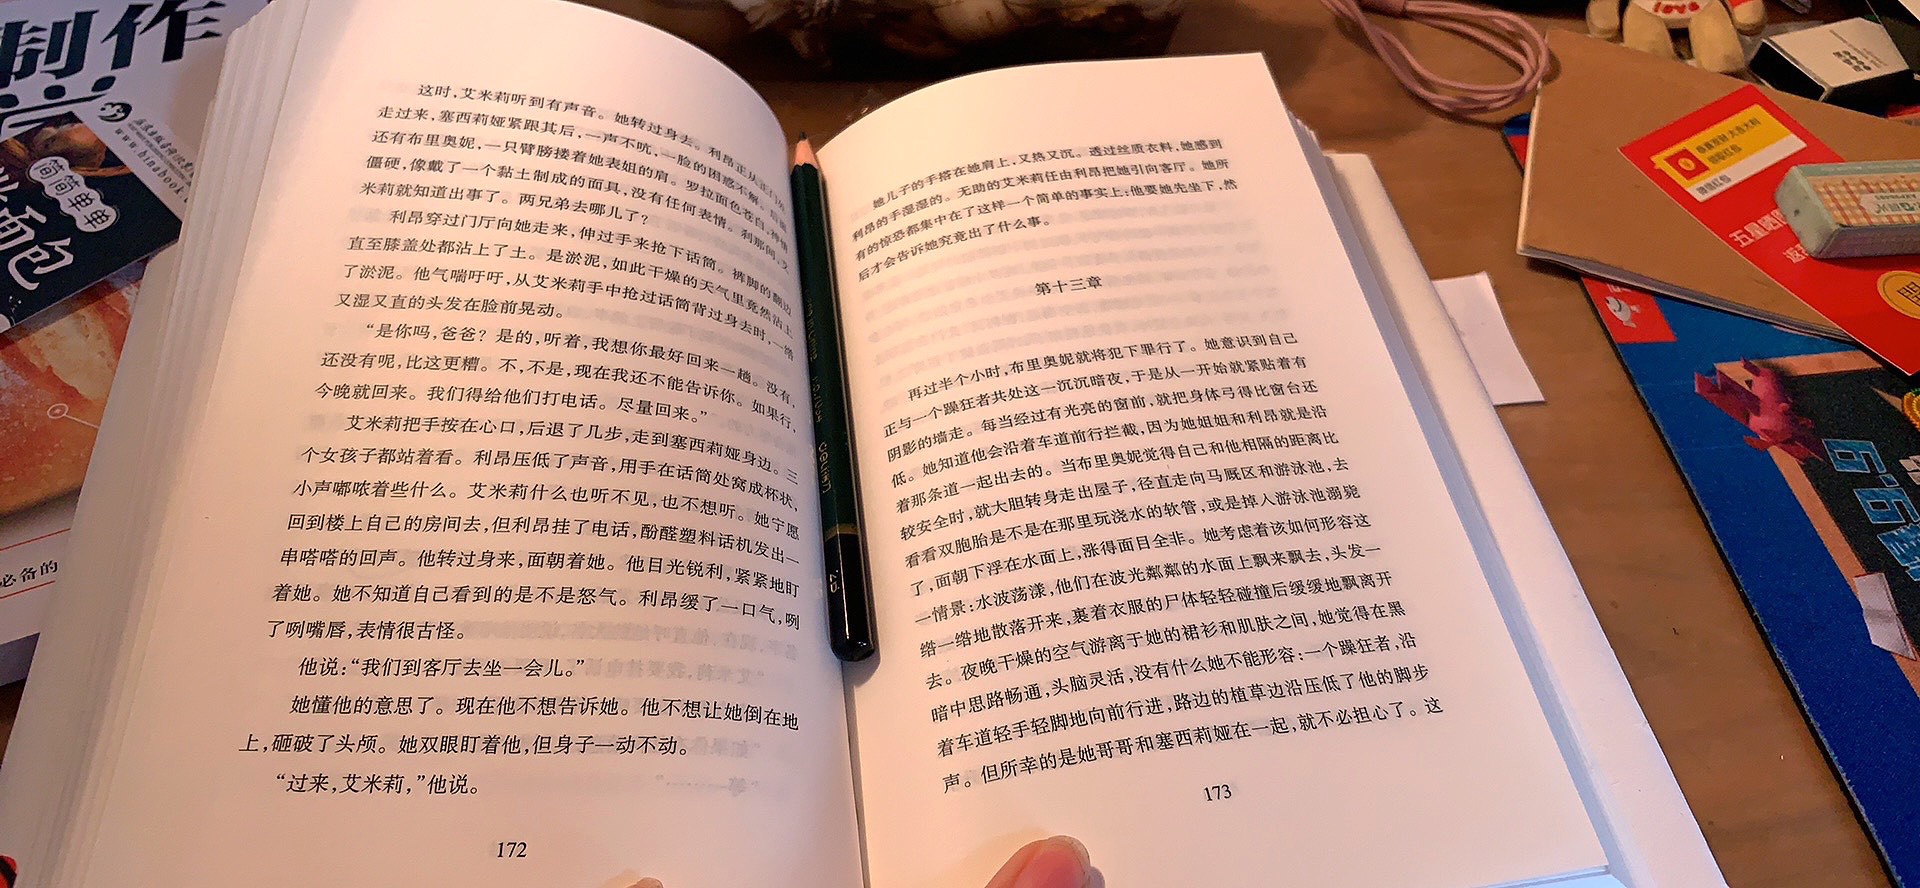 趁着麦克尤恩同志在中国的时候买的。看过几部改编电影却从未读过他的书。